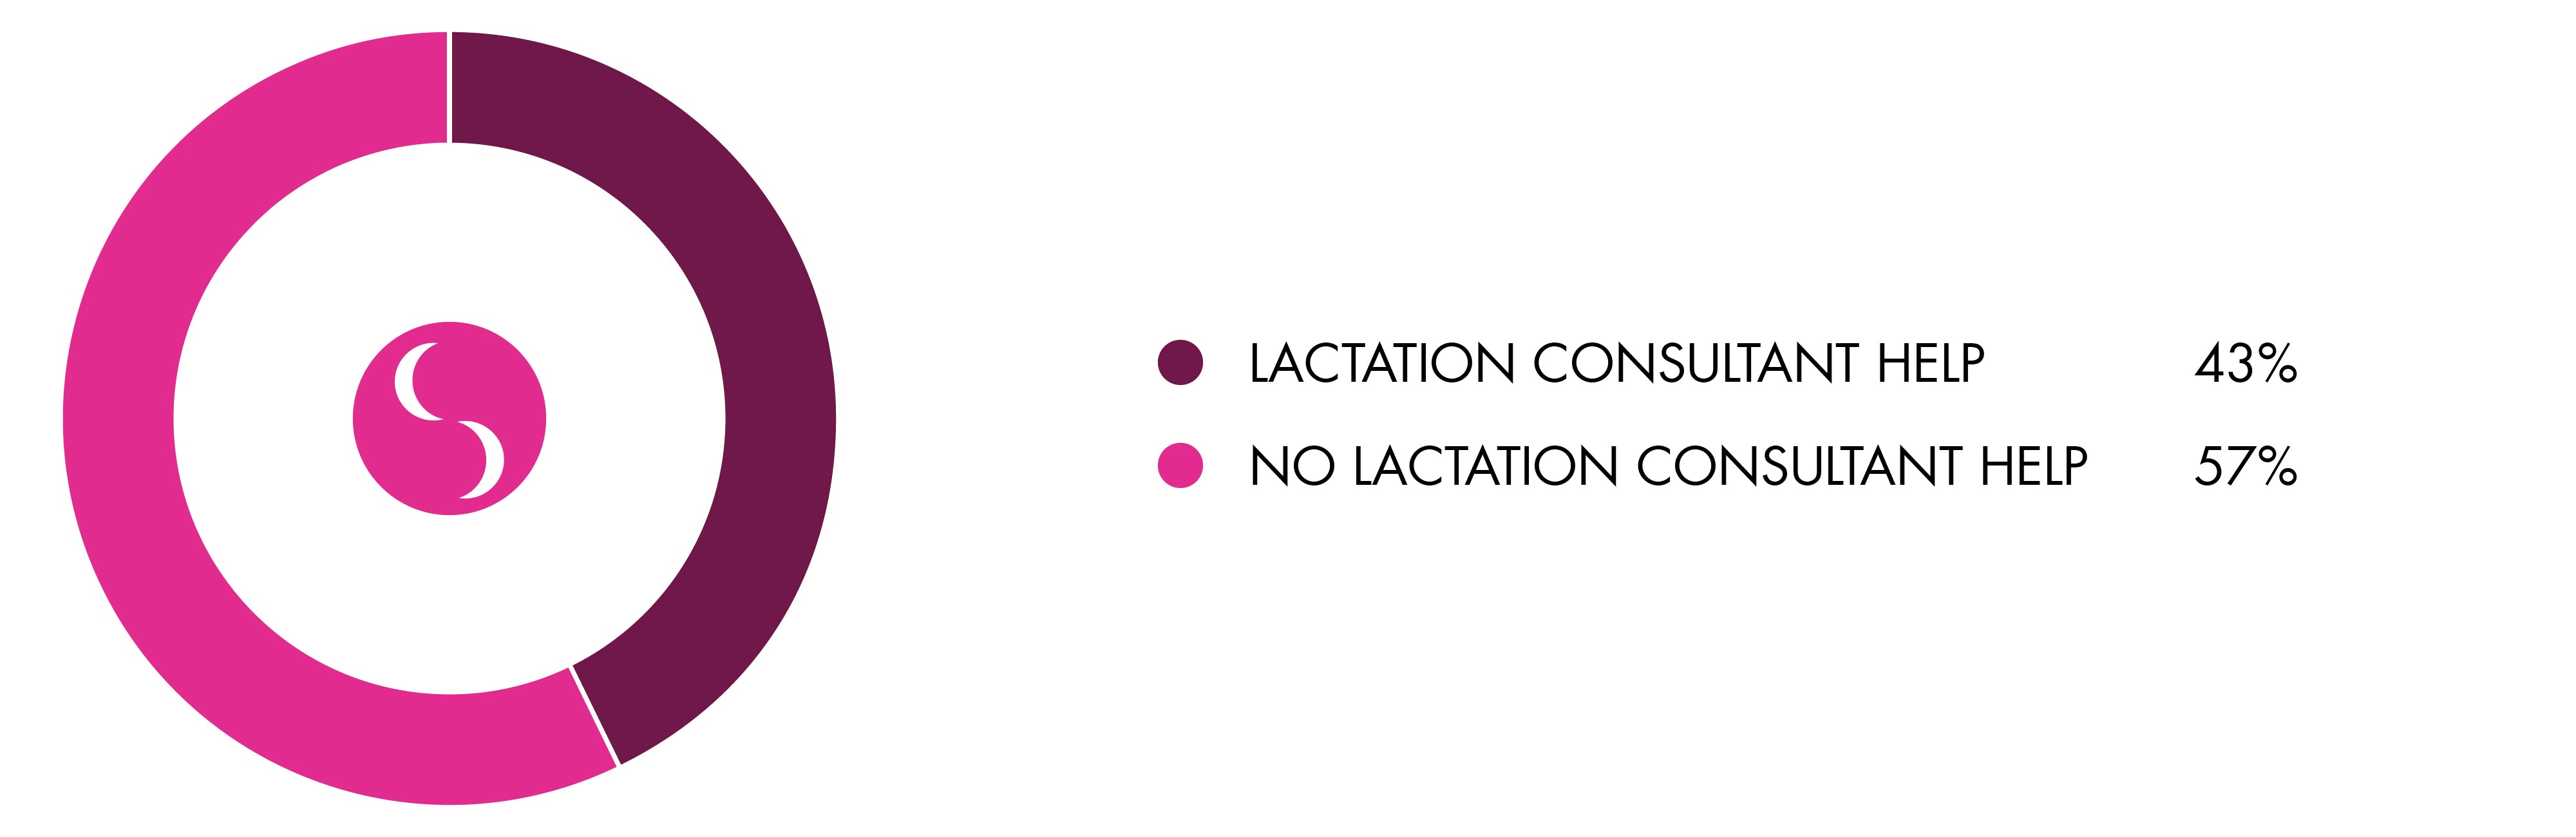 lactation-consultant-graph